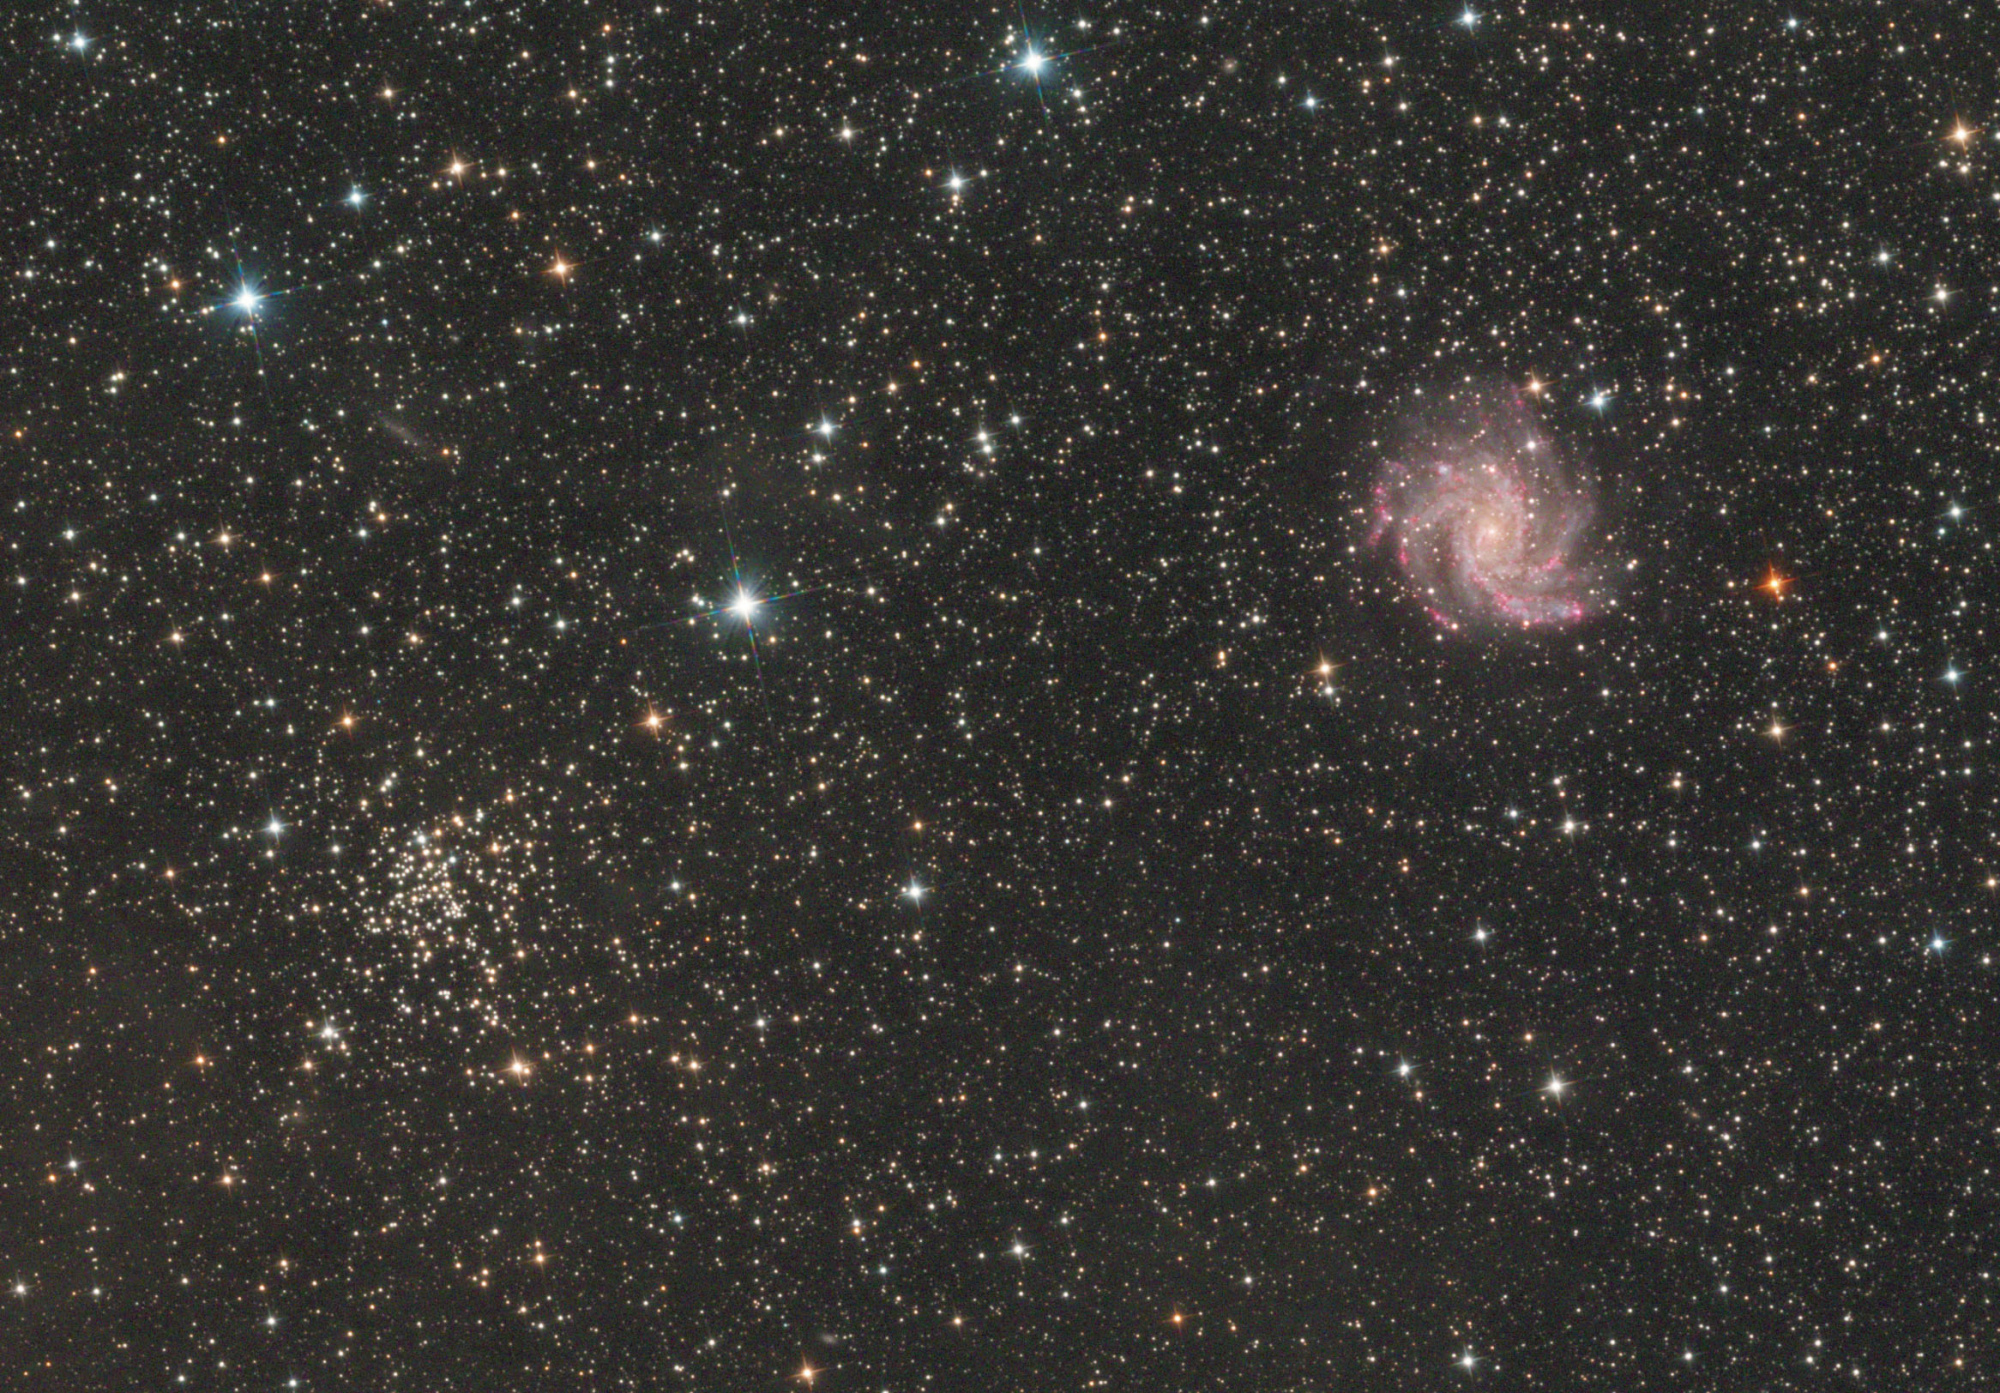 62c70e7cd4d2d_NGC6946crop.thumb.jpg.79ba5ad785be43ea661319fefac6c8bb.jpg